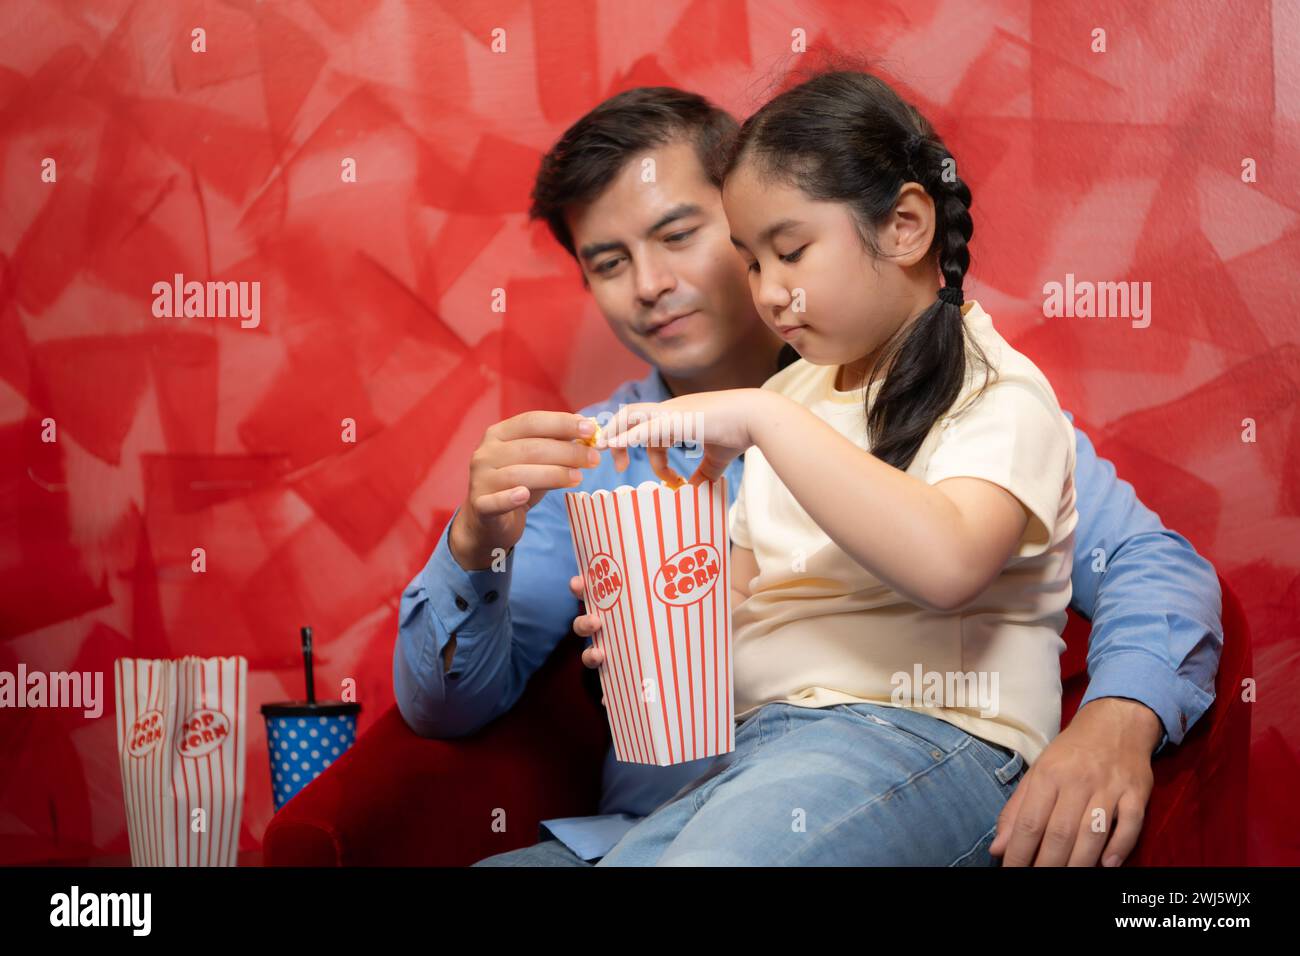 Padre e figlia mangiano popcorn e aspettano di guardare un film su sfondo rosso. Concetto di intrattenimento per famiglie. Foto Stock